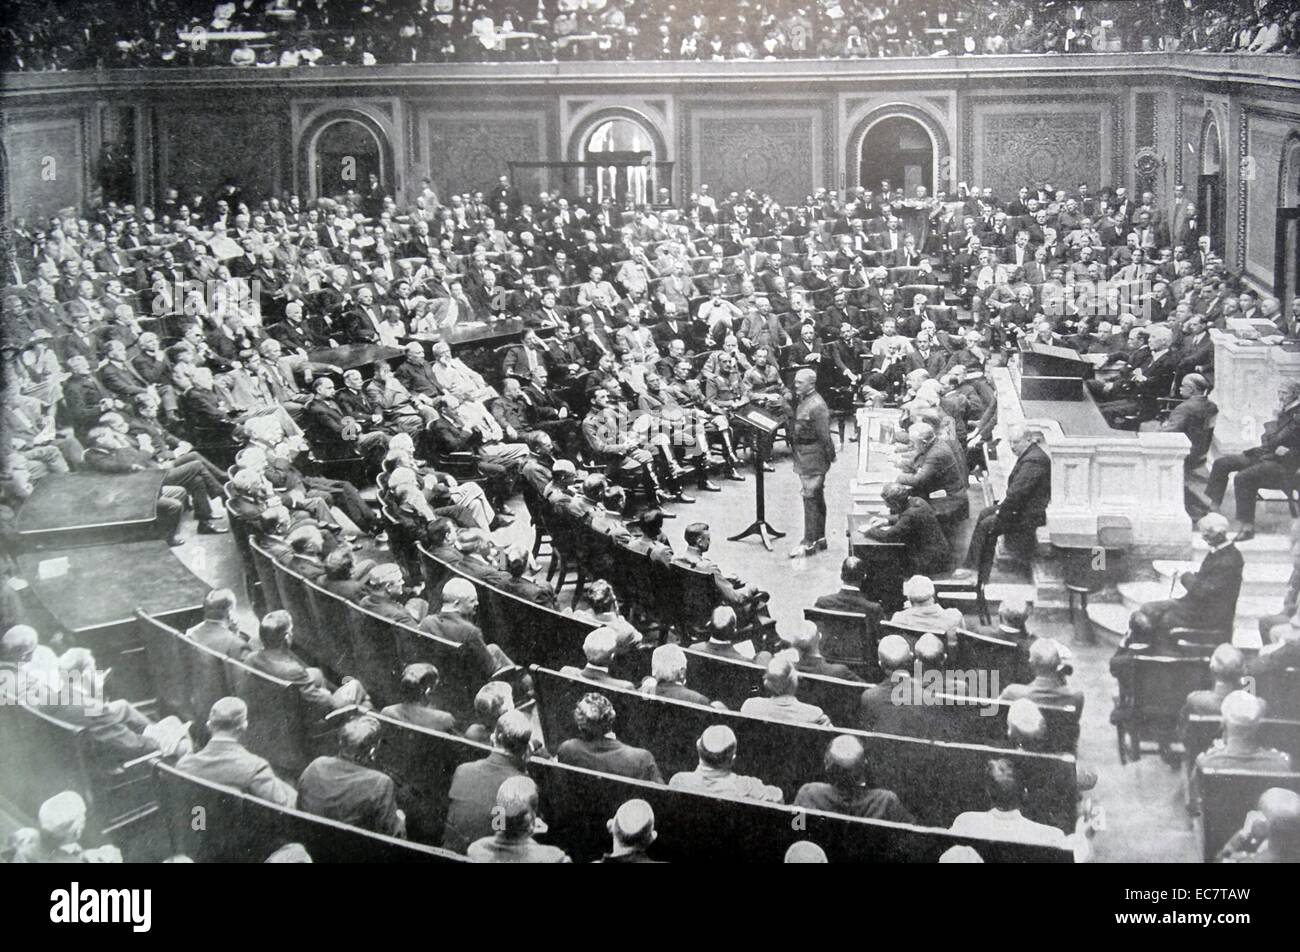 19 de septiembre de 1919 Discurso pronunciado por el General John Pershing al Congreso en Washington DC, EE.UU. acerca de la conclusión de la guerra en Europa (Primera Guerra Mundial) Foto de stock